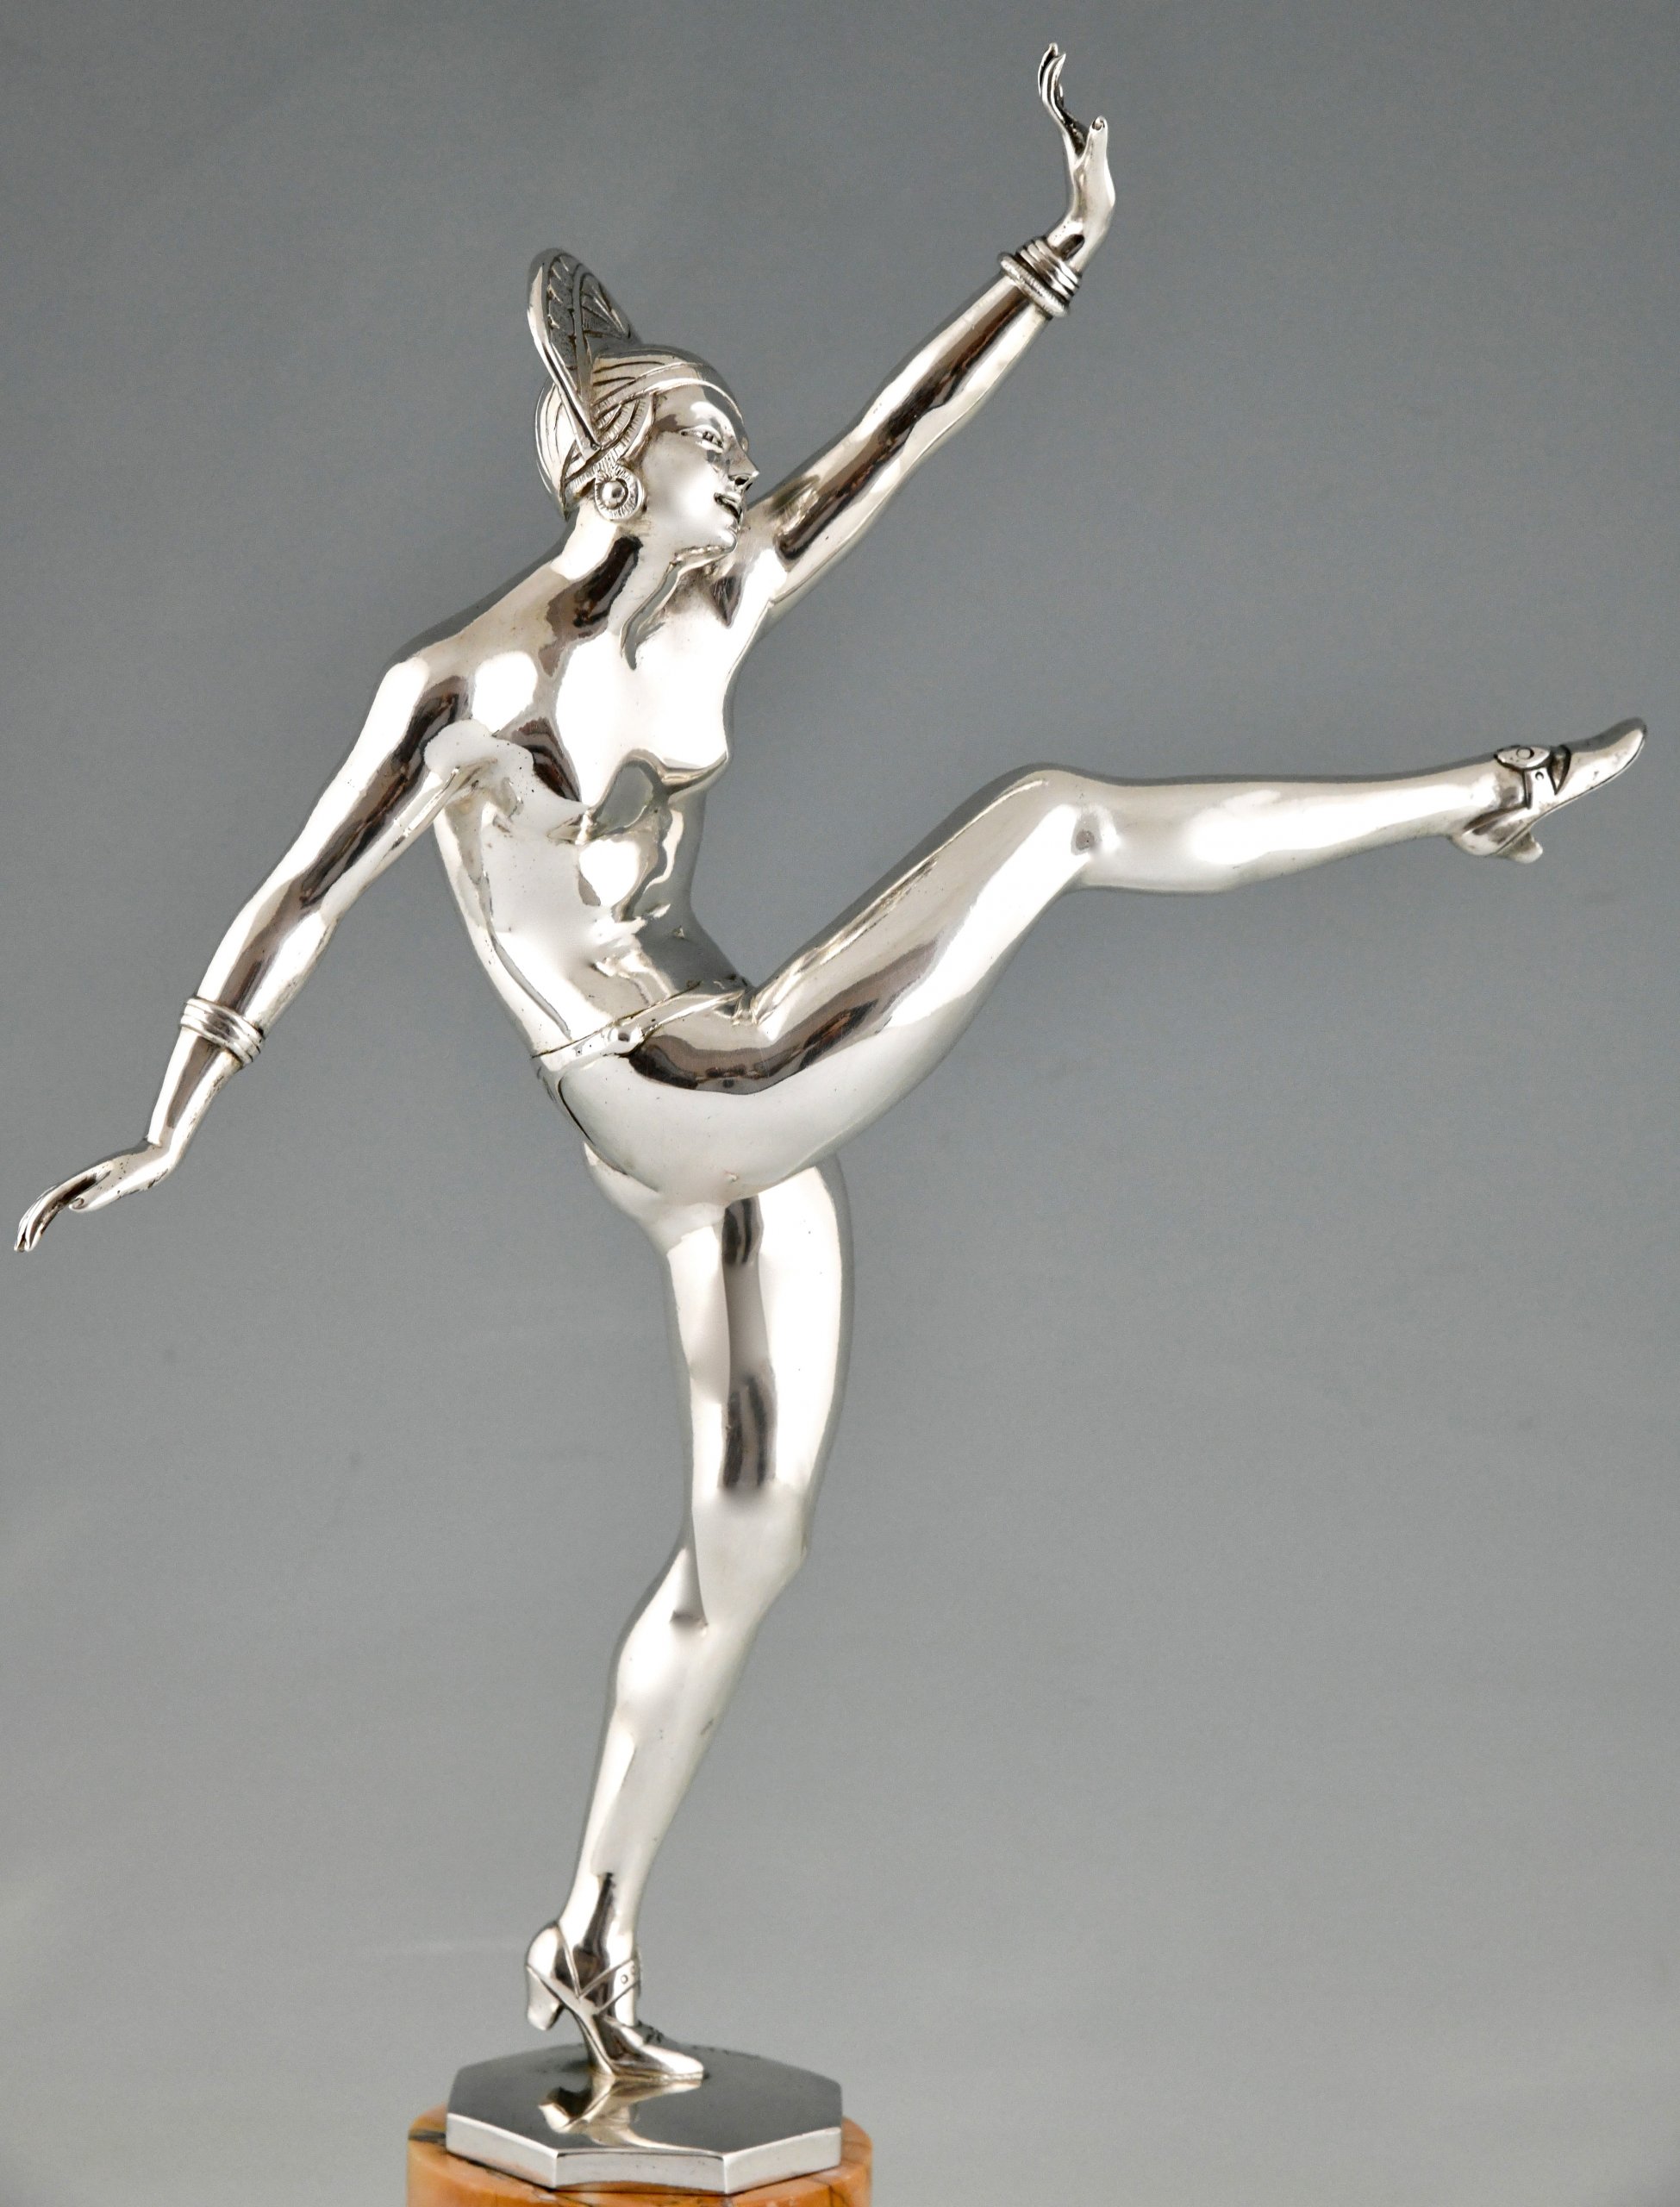 Art Deco verzilverd bronzen sculptuur van een dansend naakt